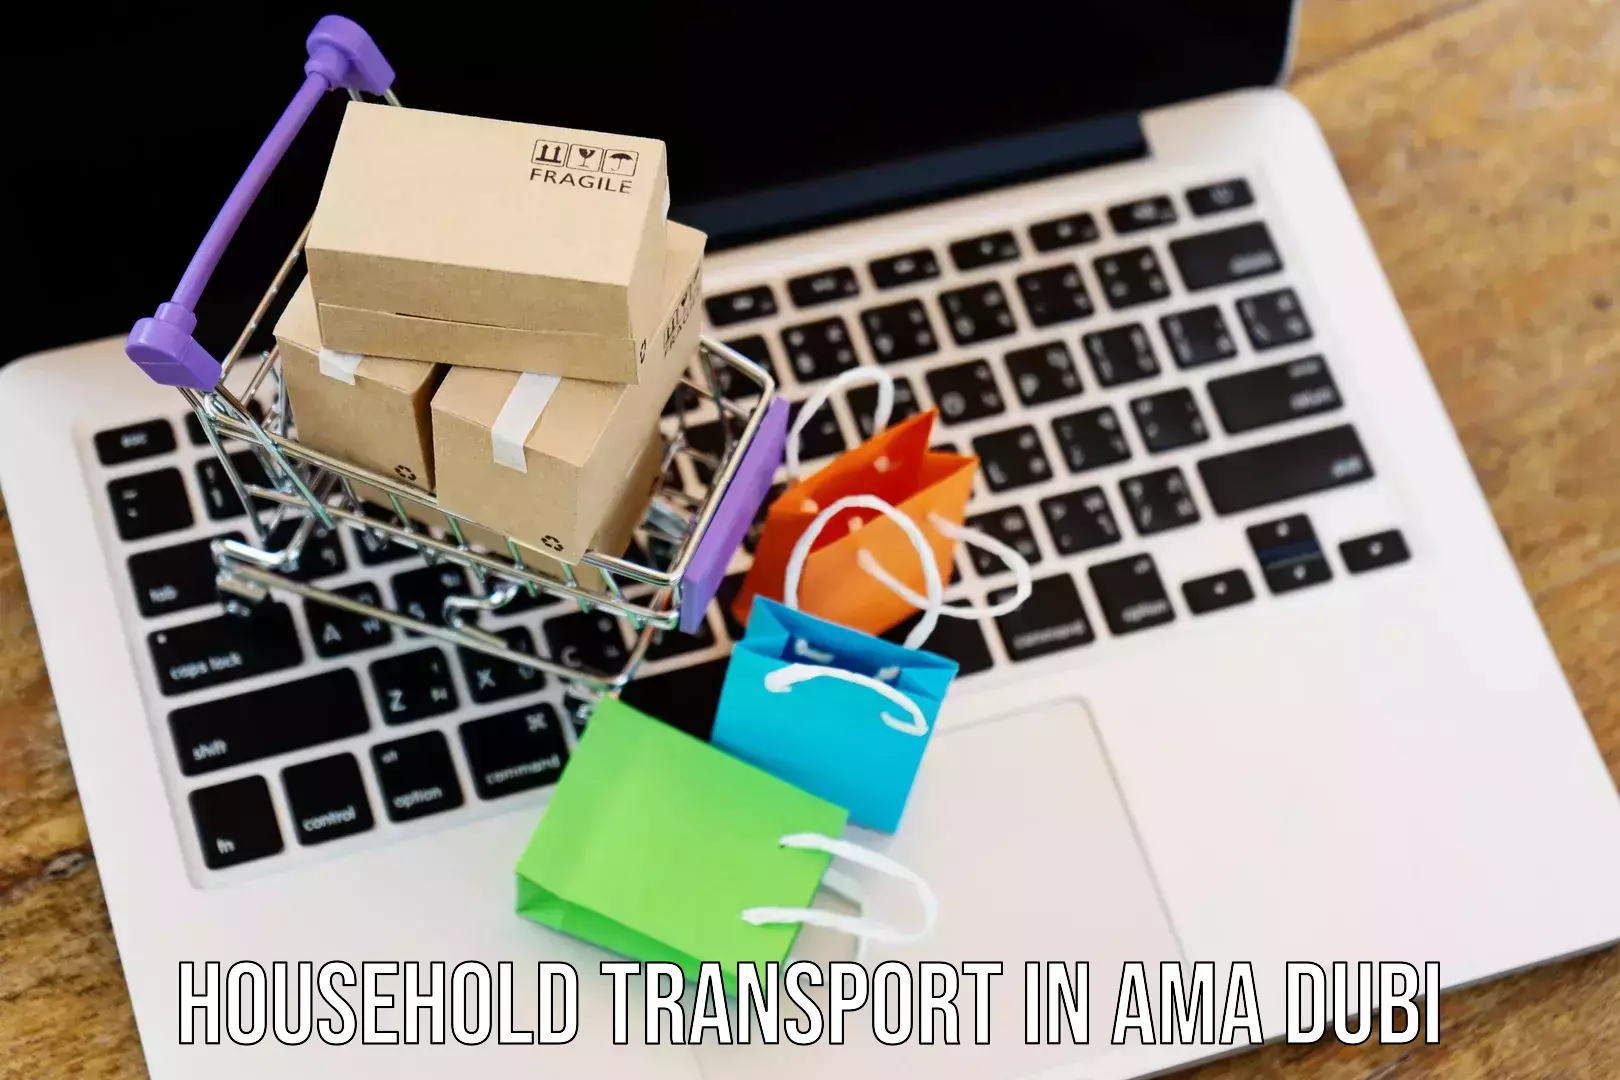 Expert household transport in Ama Dubi